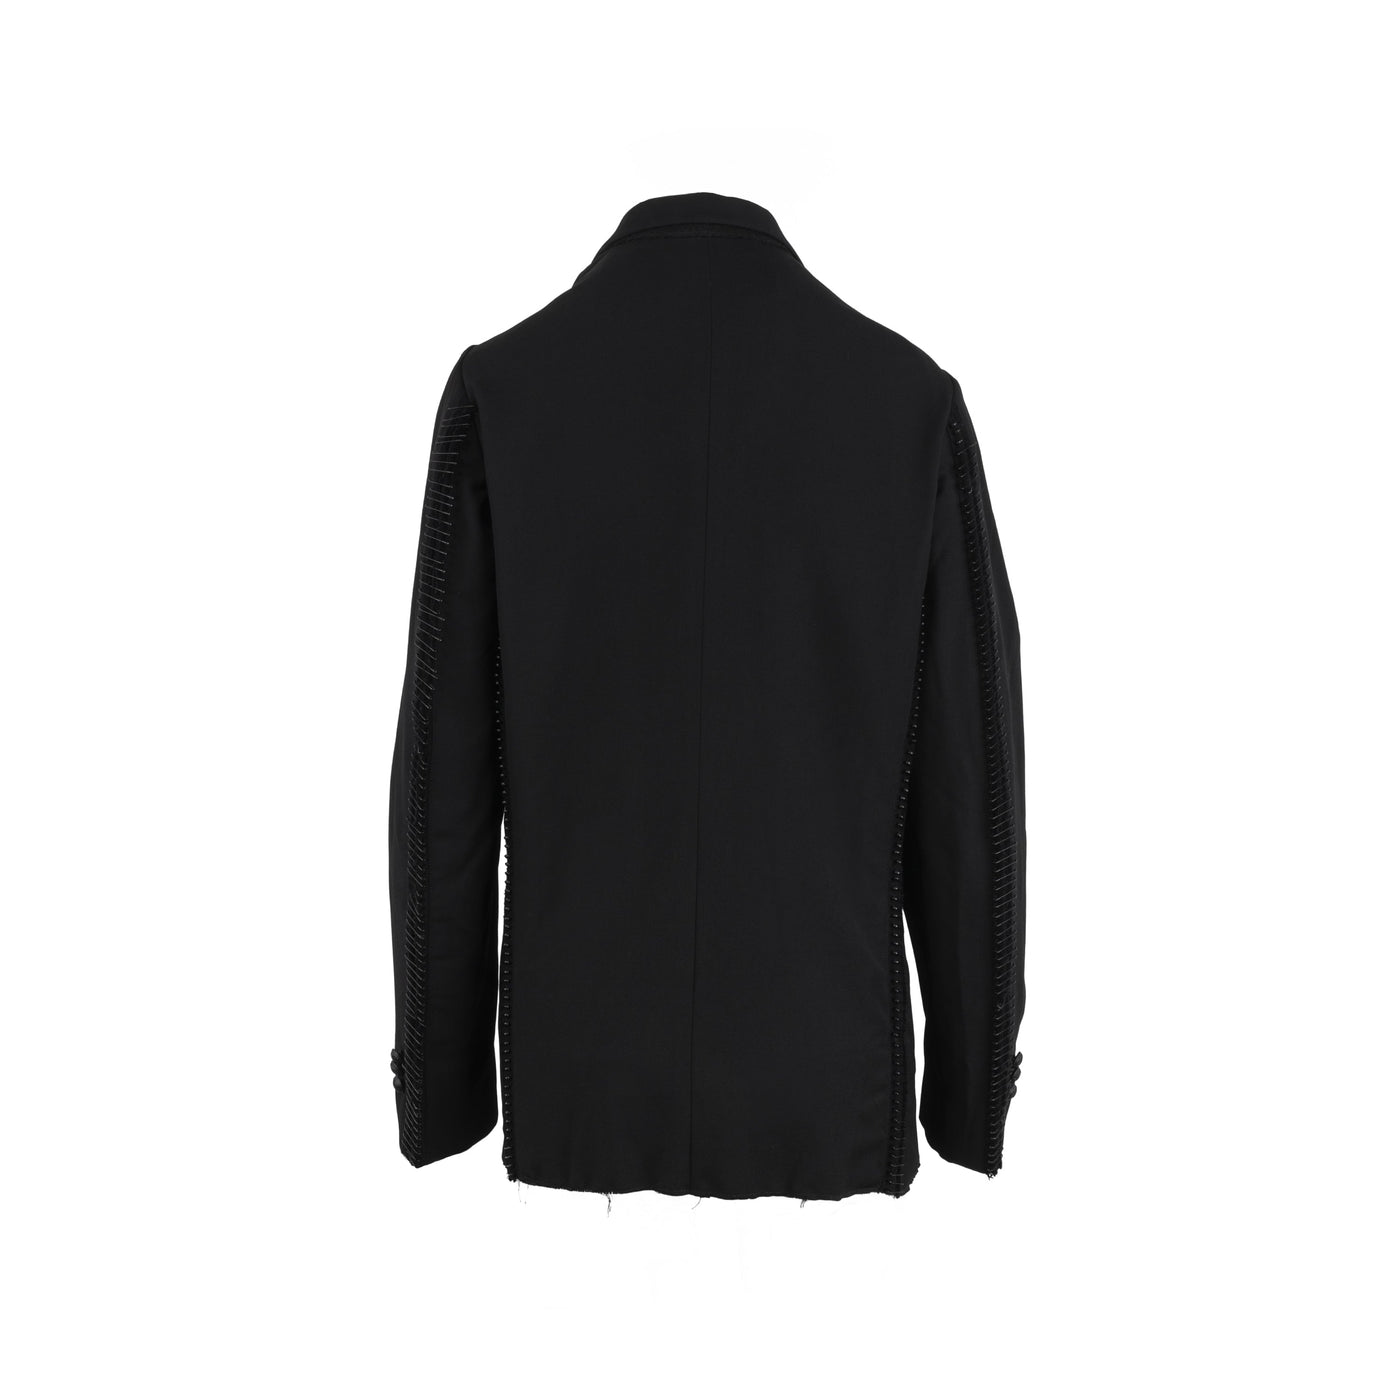 Diliborio black wool jacket pre-owned